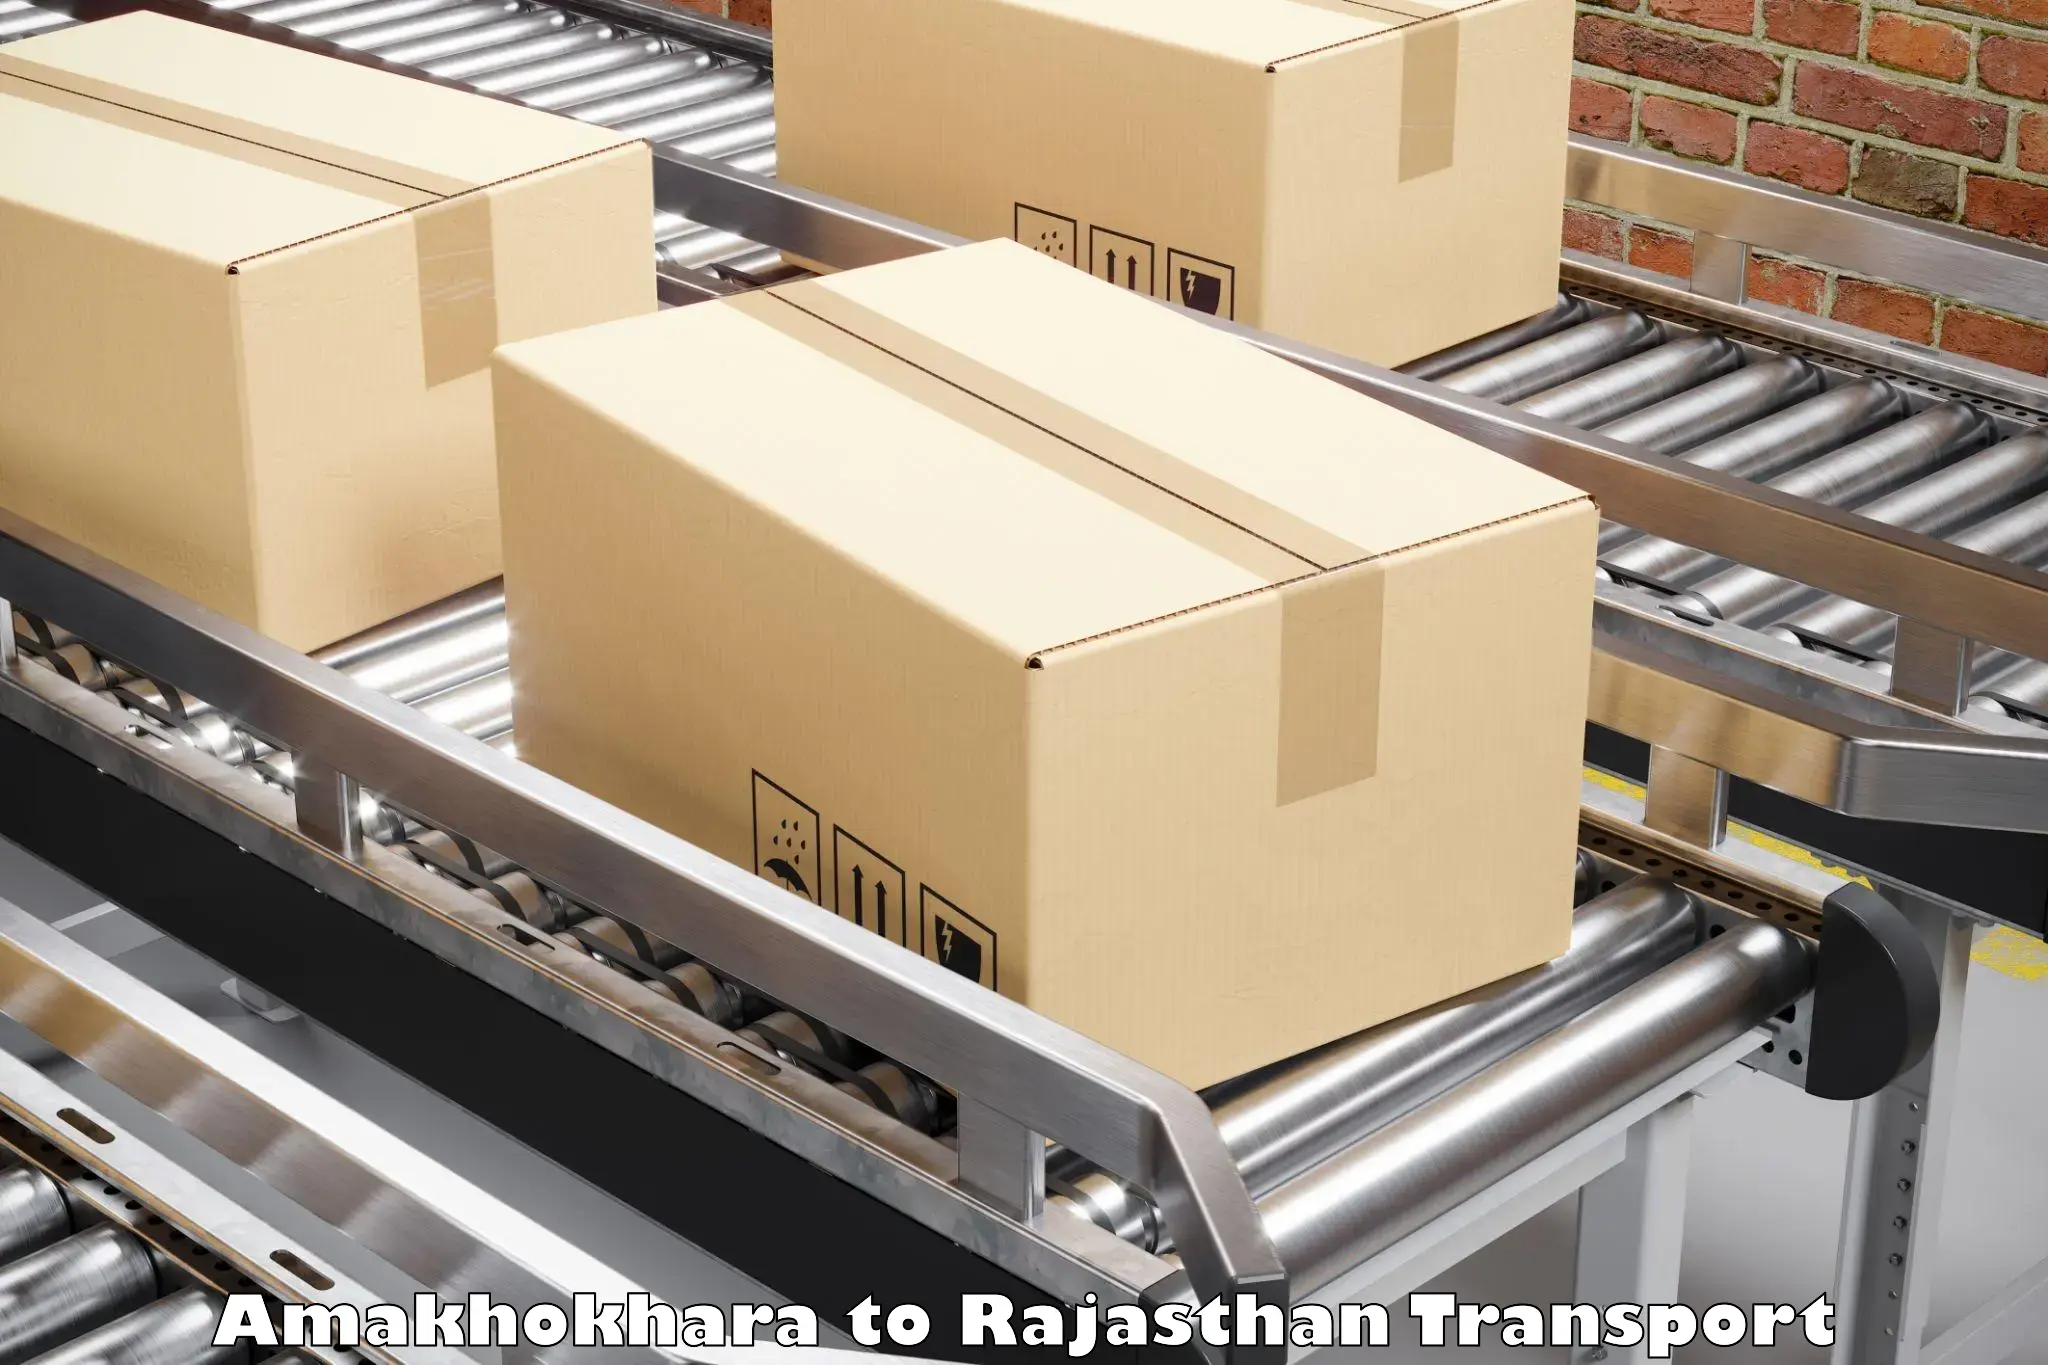 International cargo transportation services Amakhokhara to Chaumahla